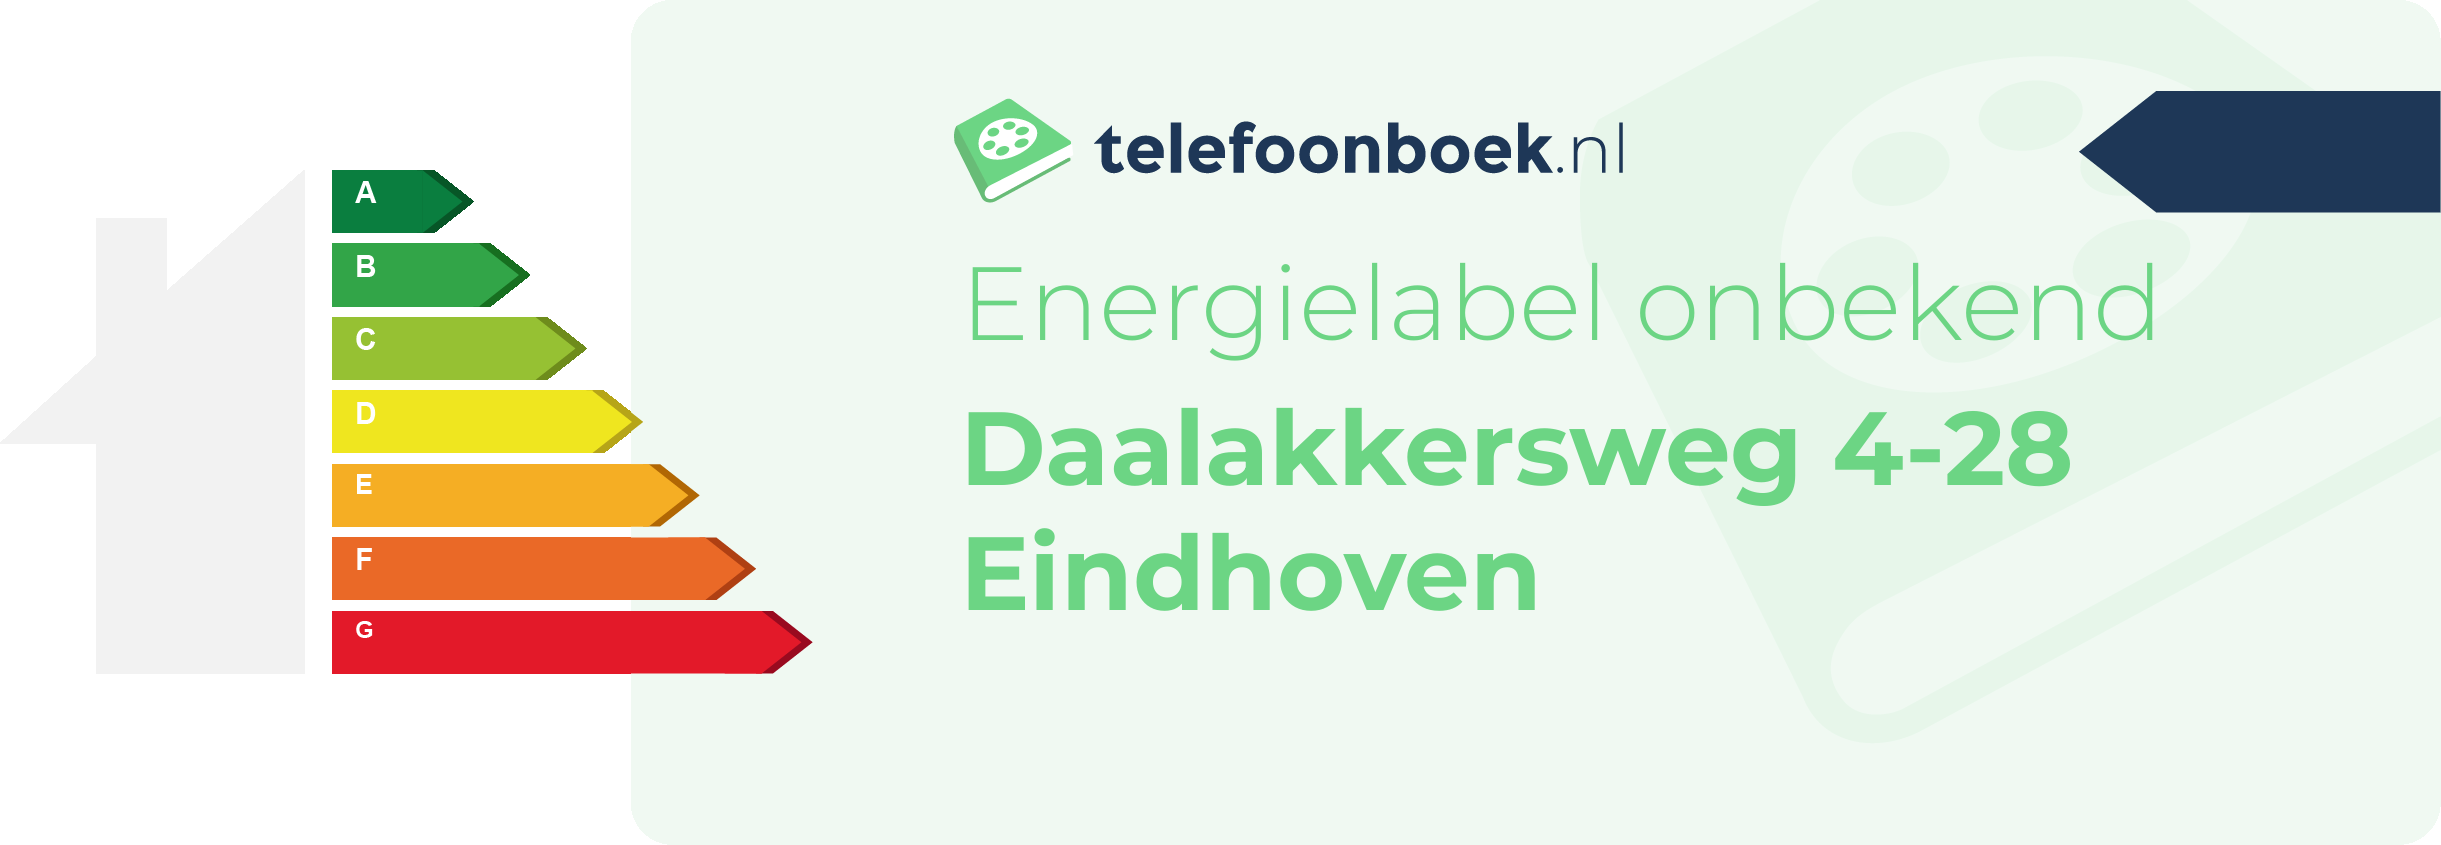 Energielabel Daalakkersweg 4-28 Eindhoven